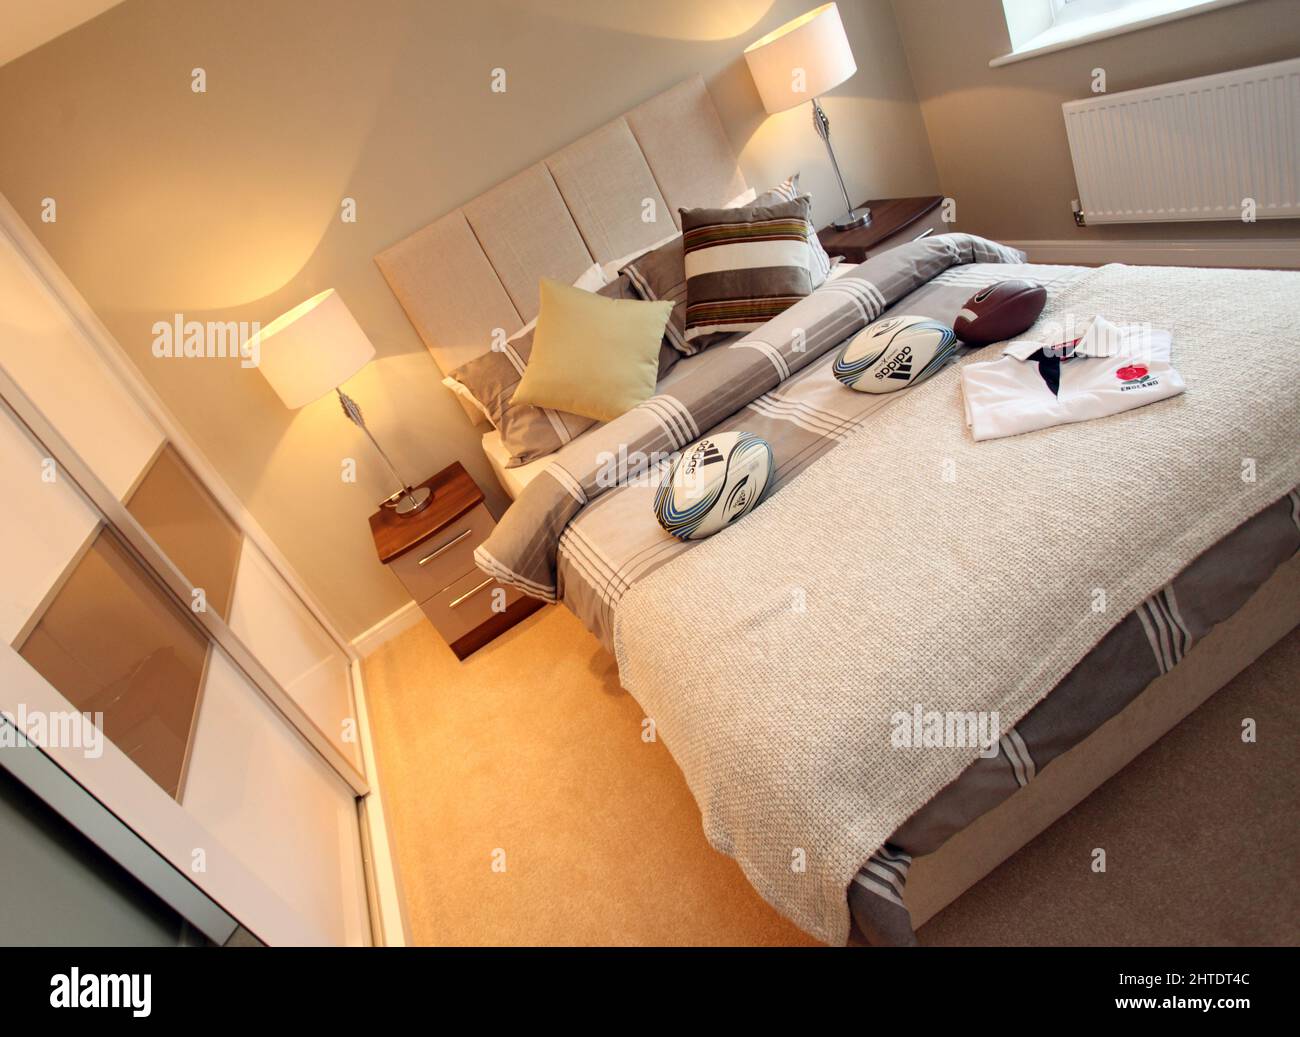 Chambre moderne pour garçons dans une nouvelle maison, thème rugby, couvre-lit, beige, tons neutres, tête de lit rembourrée, ballons de rugby, chambre pour garçons, Banque D'Images